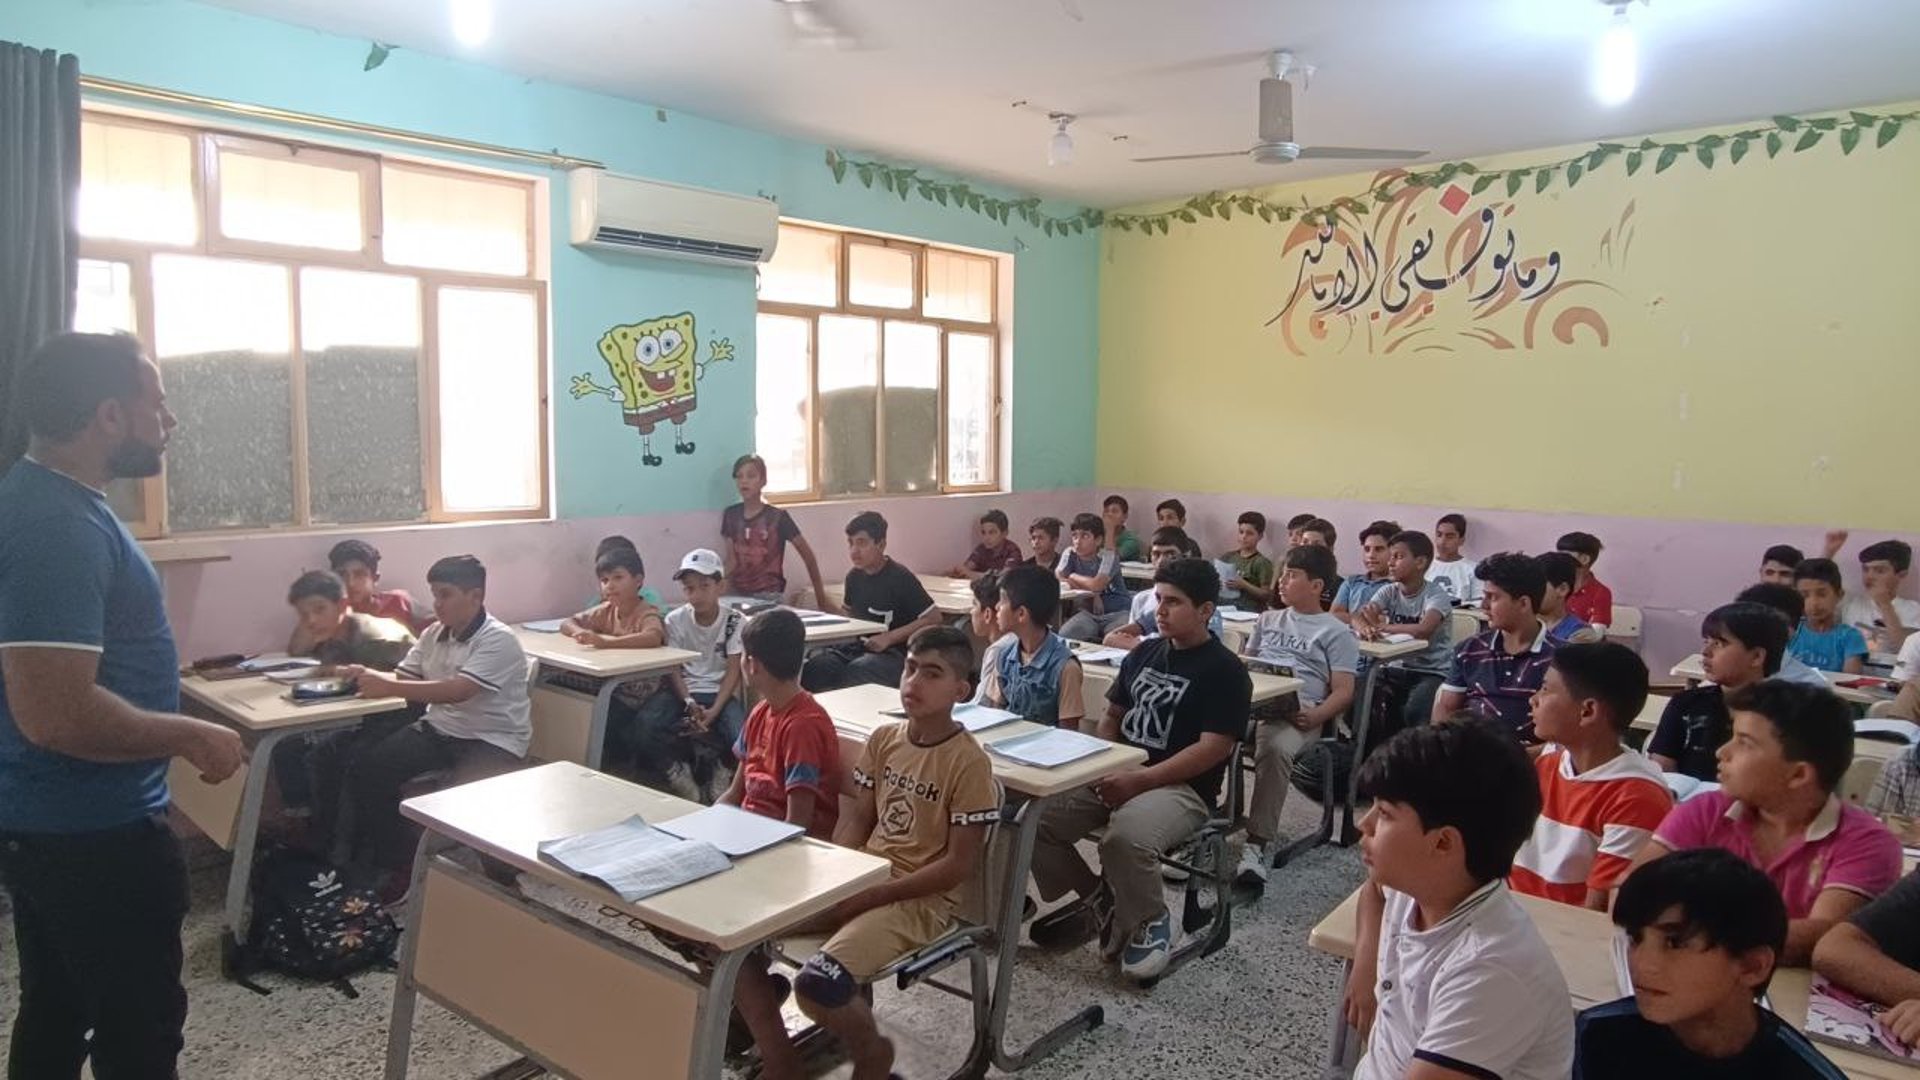 صور من الفاو: 200 تلميذ في مدرسة الشهيد مصطفى الصدر يتلقون التقوية